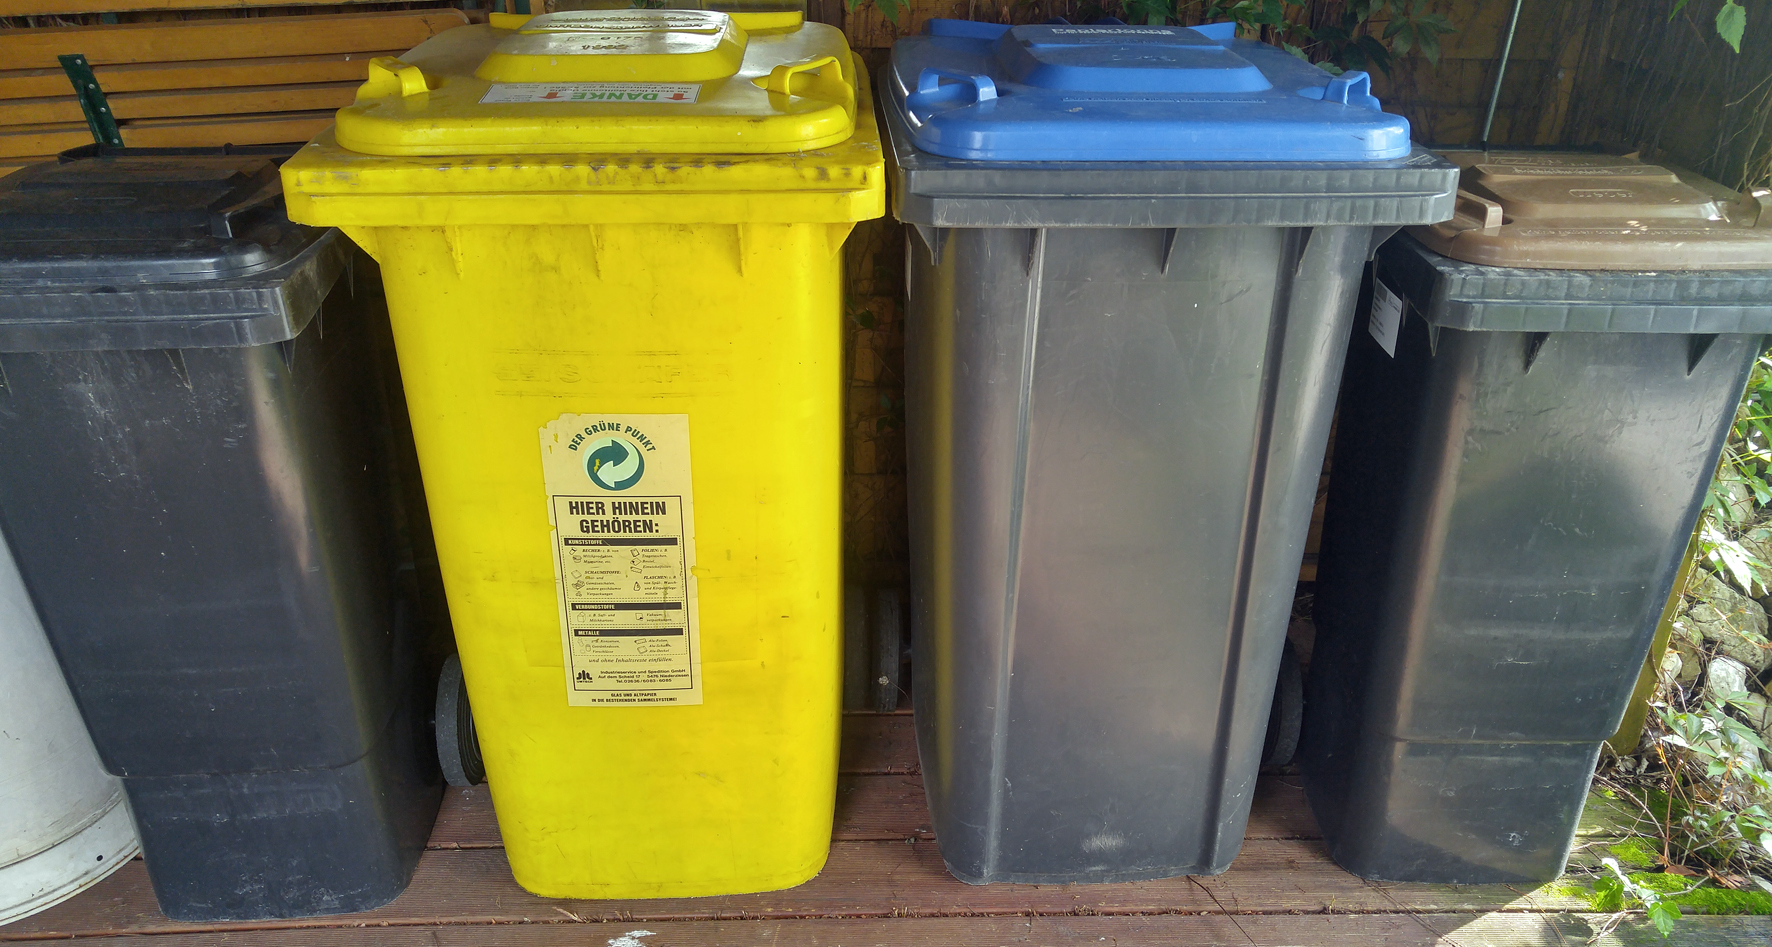 1 Jahr neues Müllkonzept im Kreis Ahrweiler – Restmüllmenge hat sich deutlich verringert